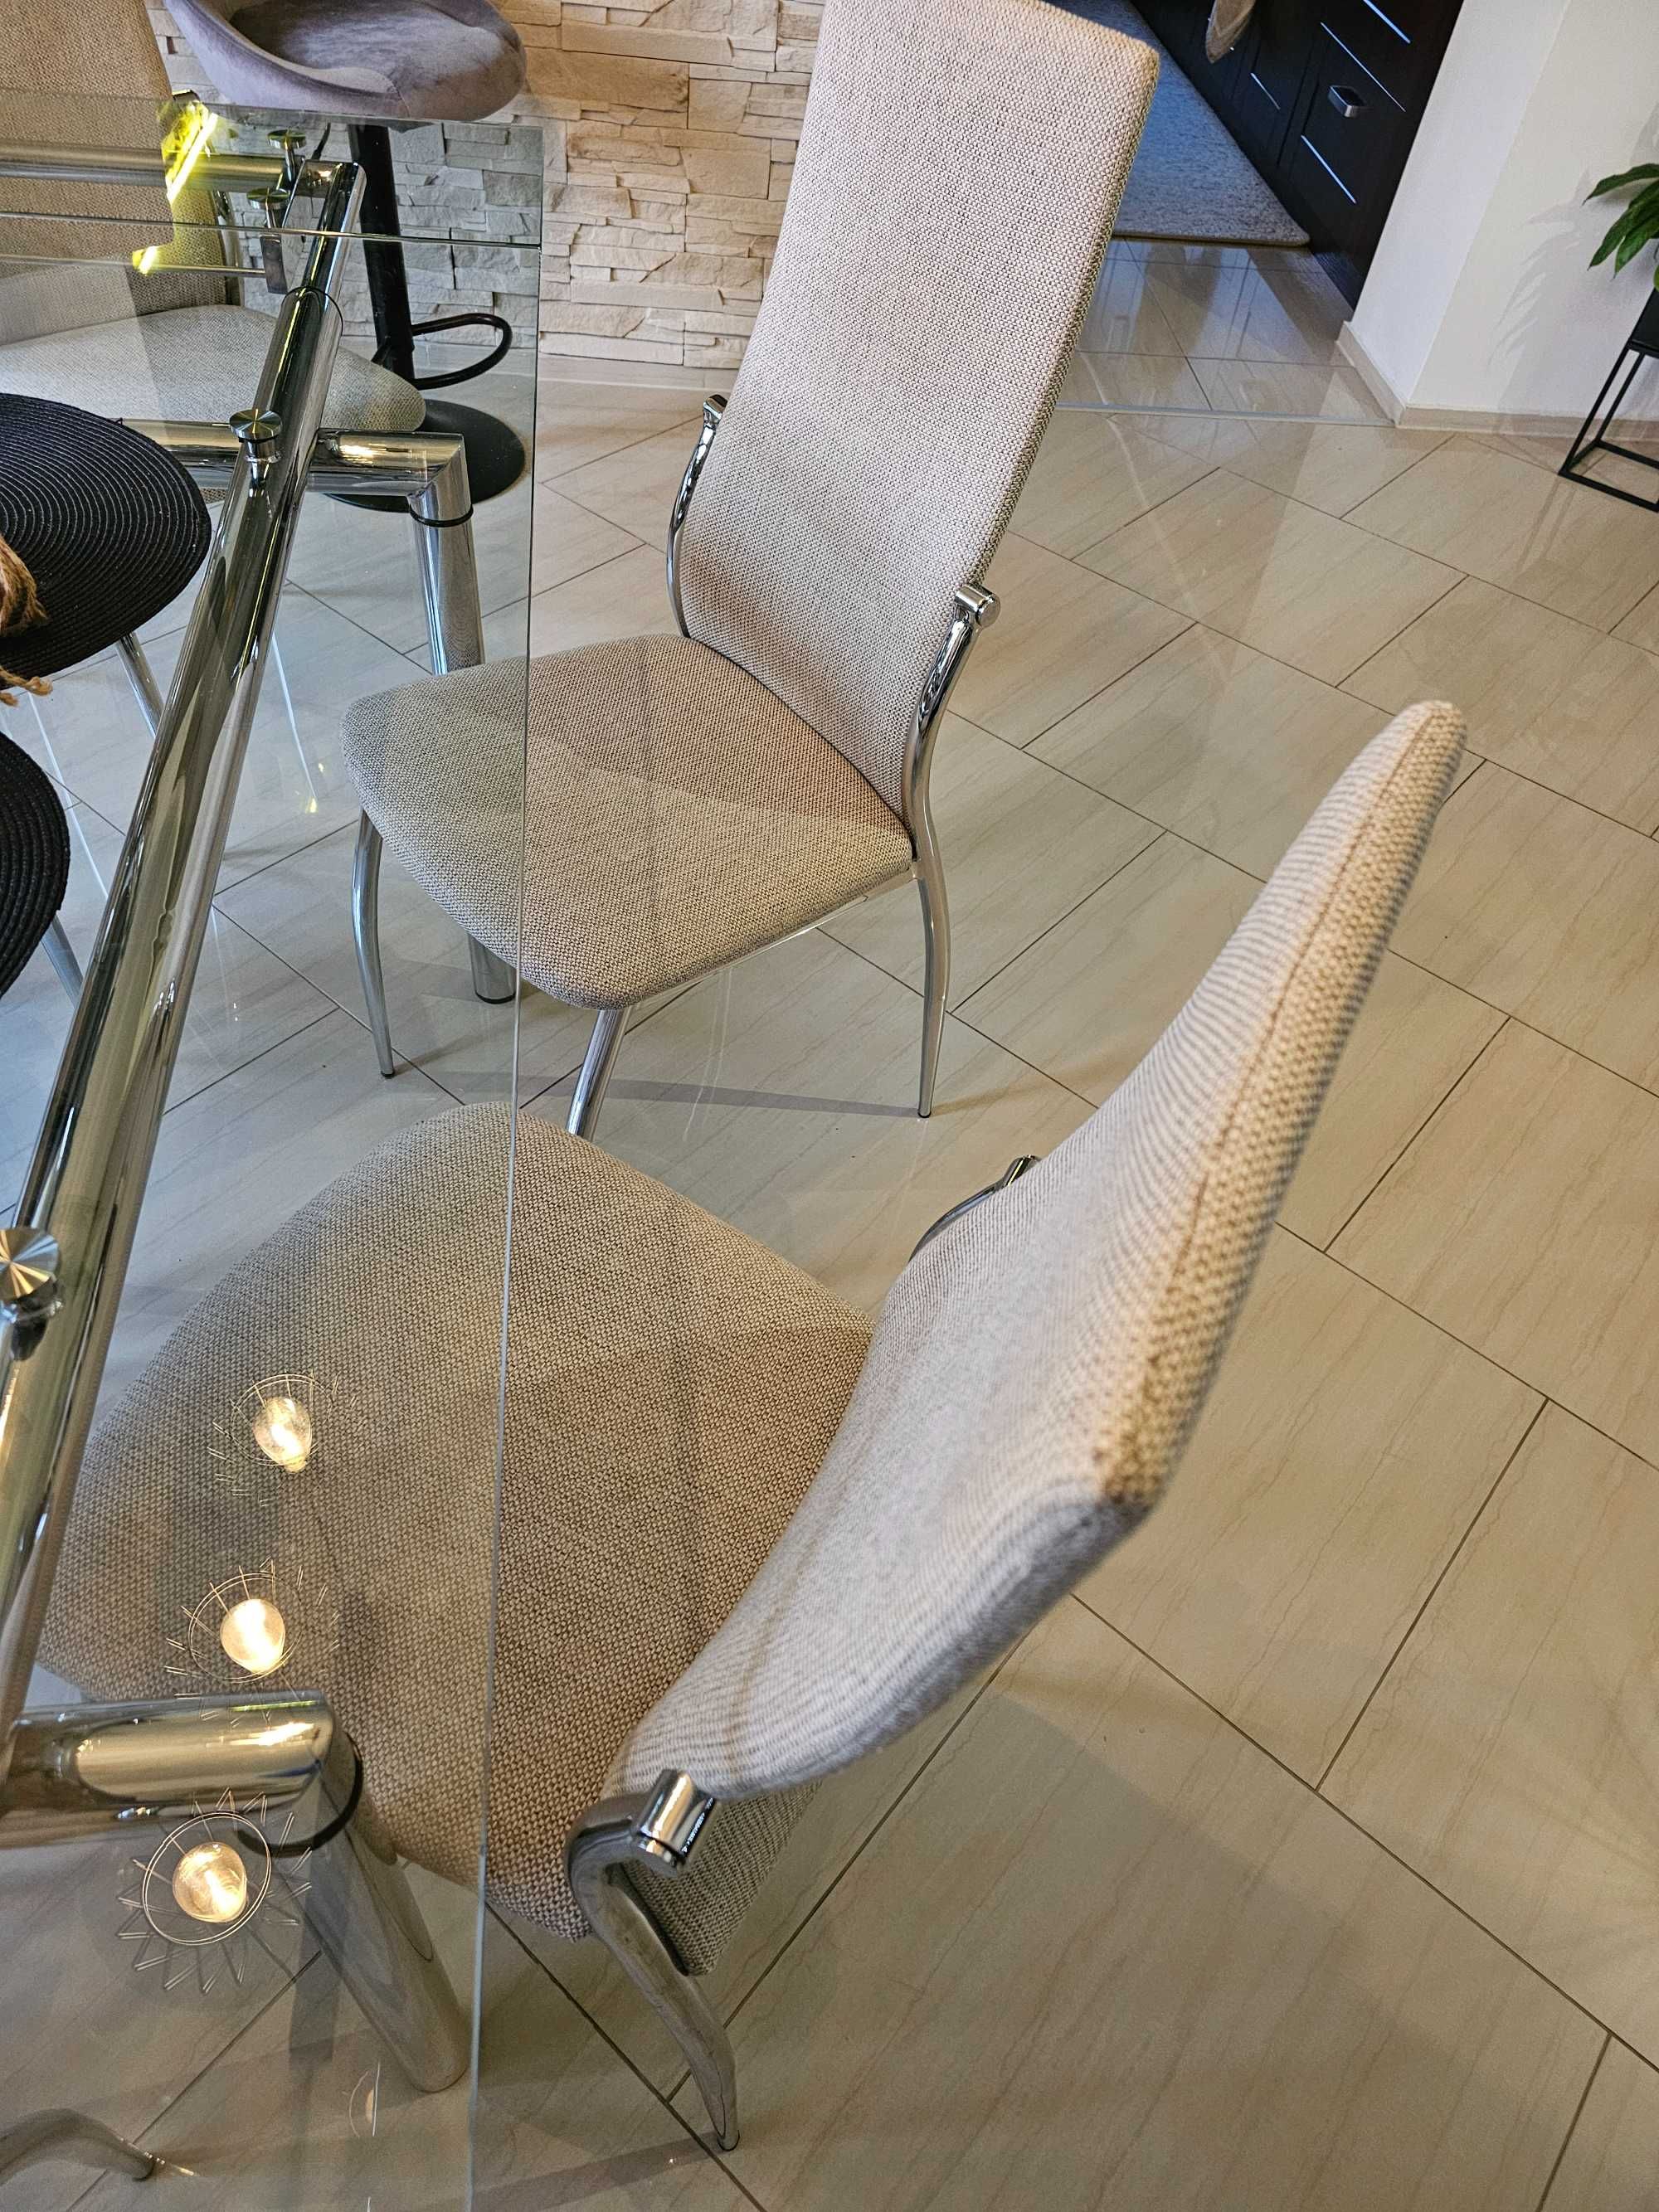 Szklany stół z krzesłami